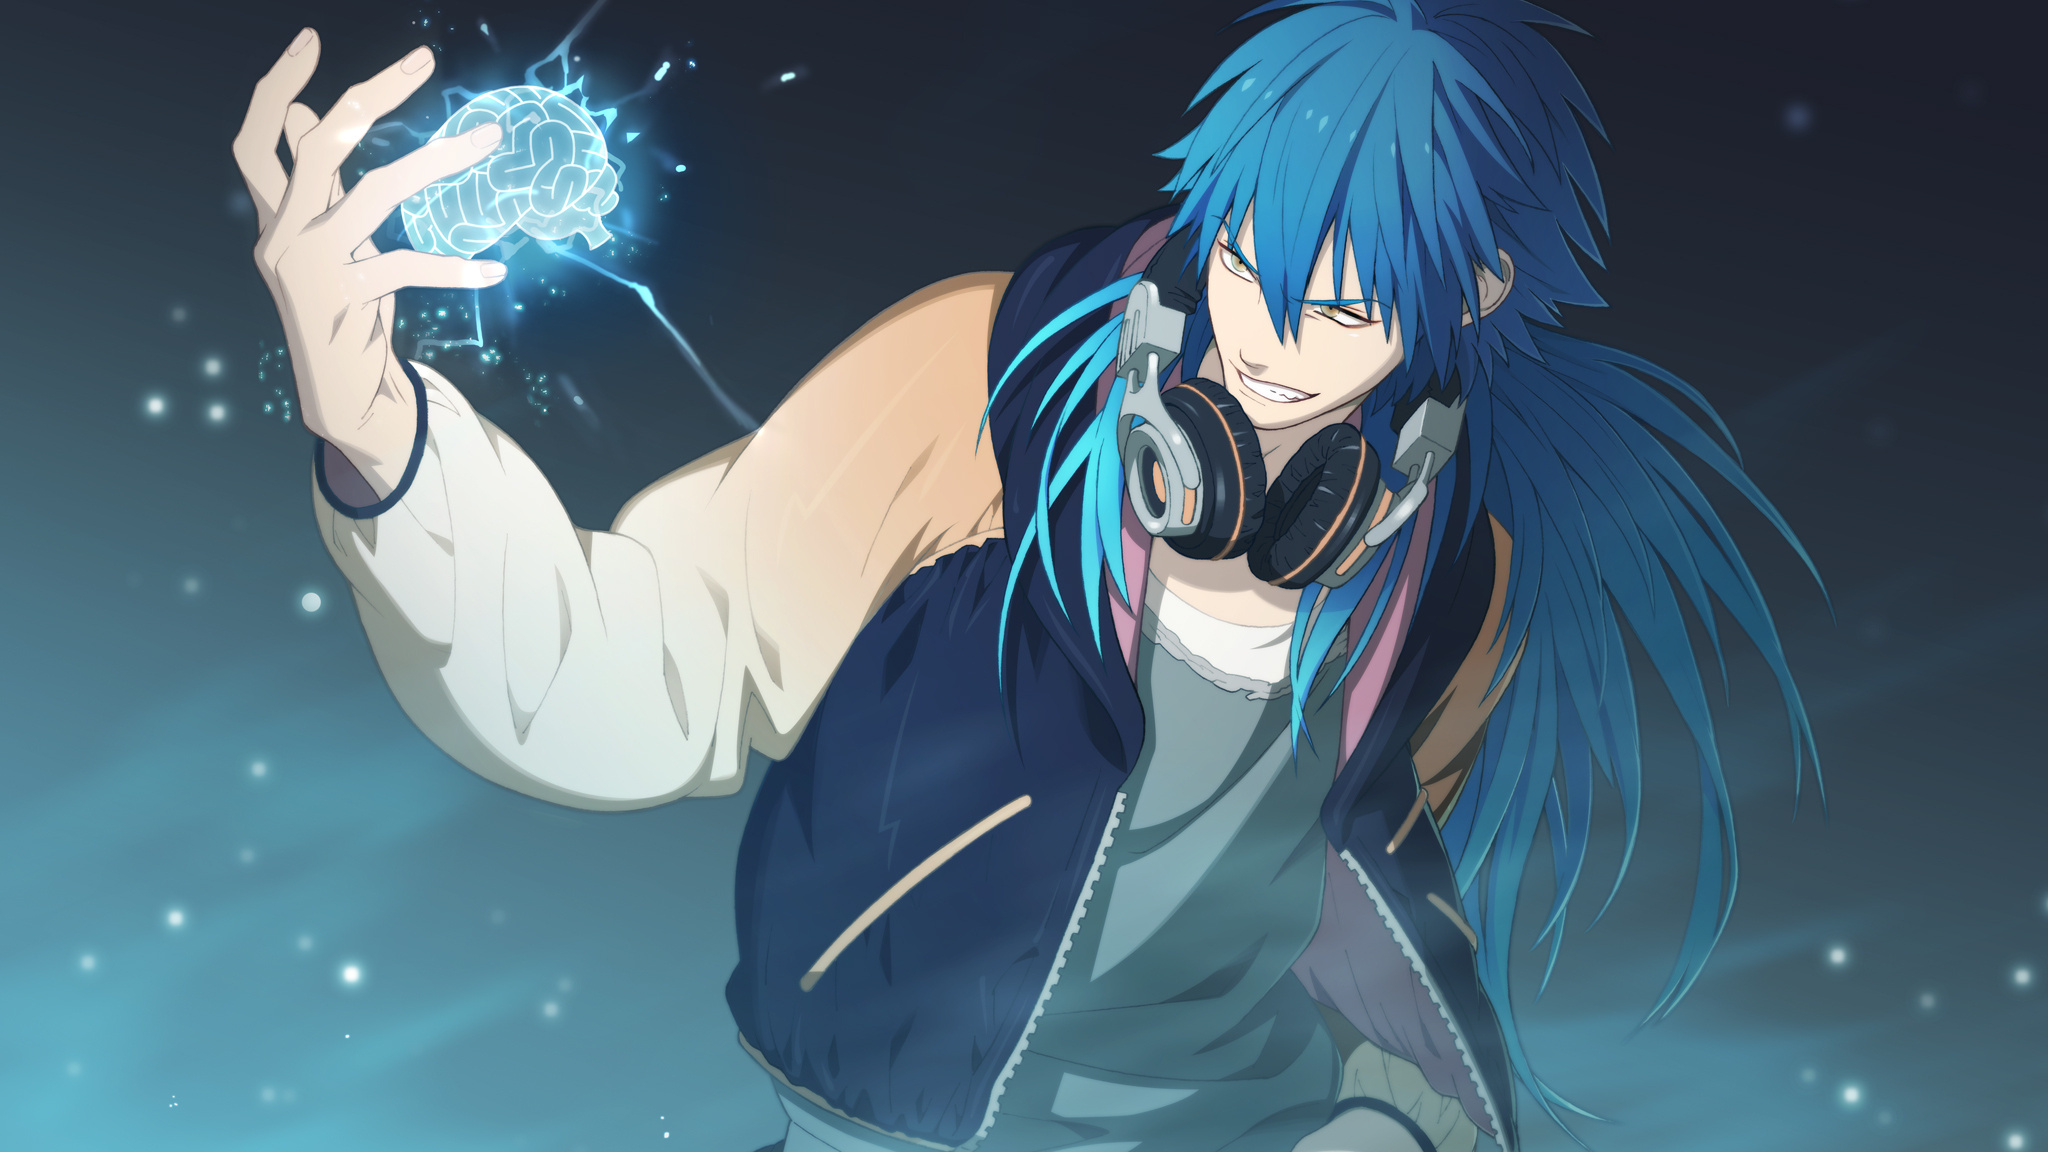 Anime Anime Boys Blue Hair Long Hair Headphones DRAMAtical Murder 2048x1152